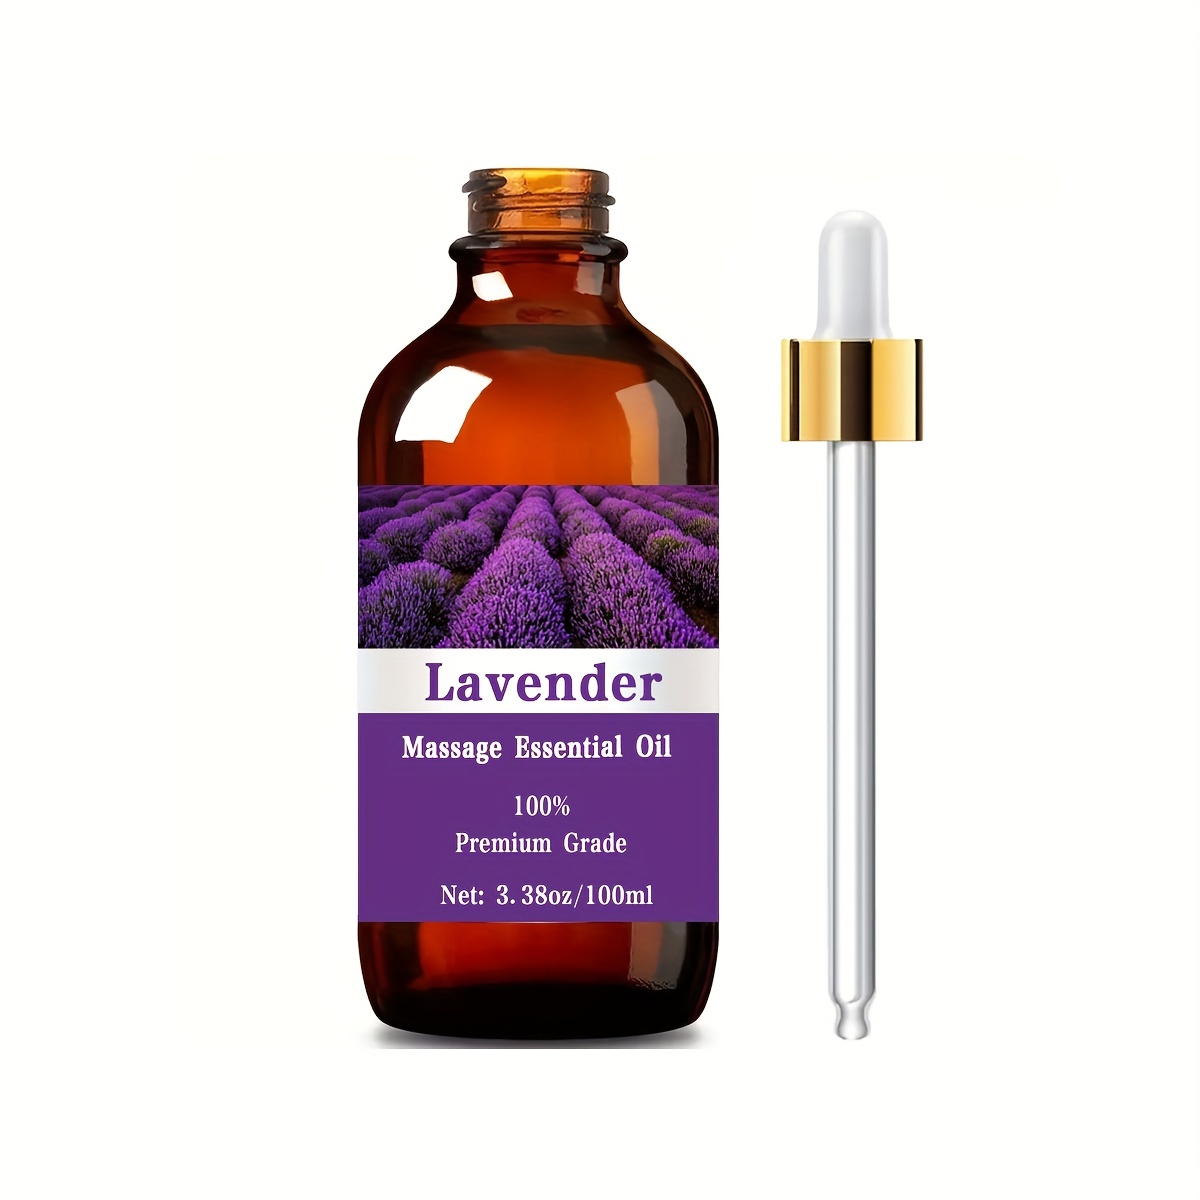 3.38 Fl Oz Lavender Essential Oil For Diffuser Humidifier - Temu